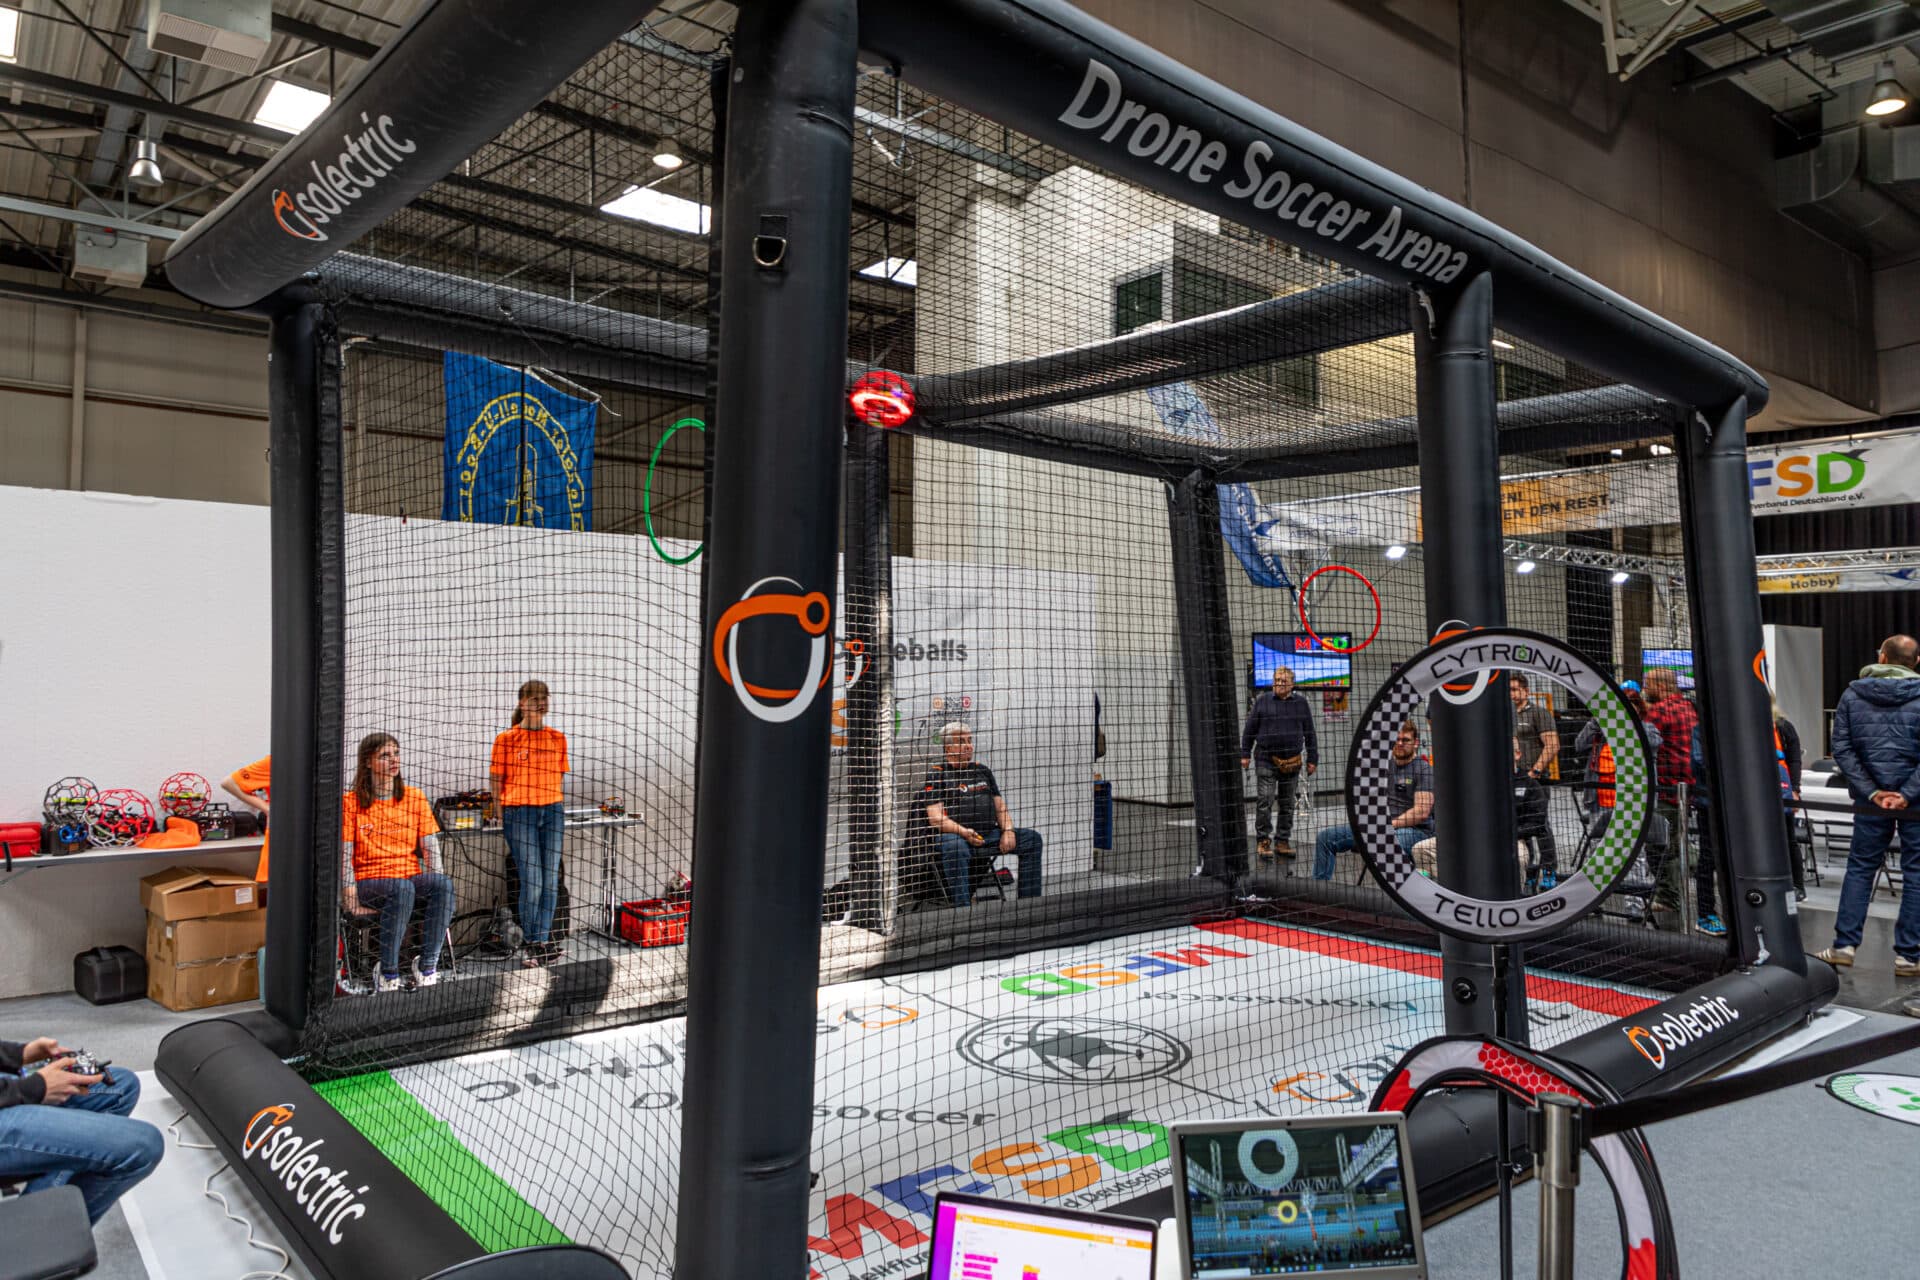 Drone Soccer Käfig auf der Modellbau in Dortmund